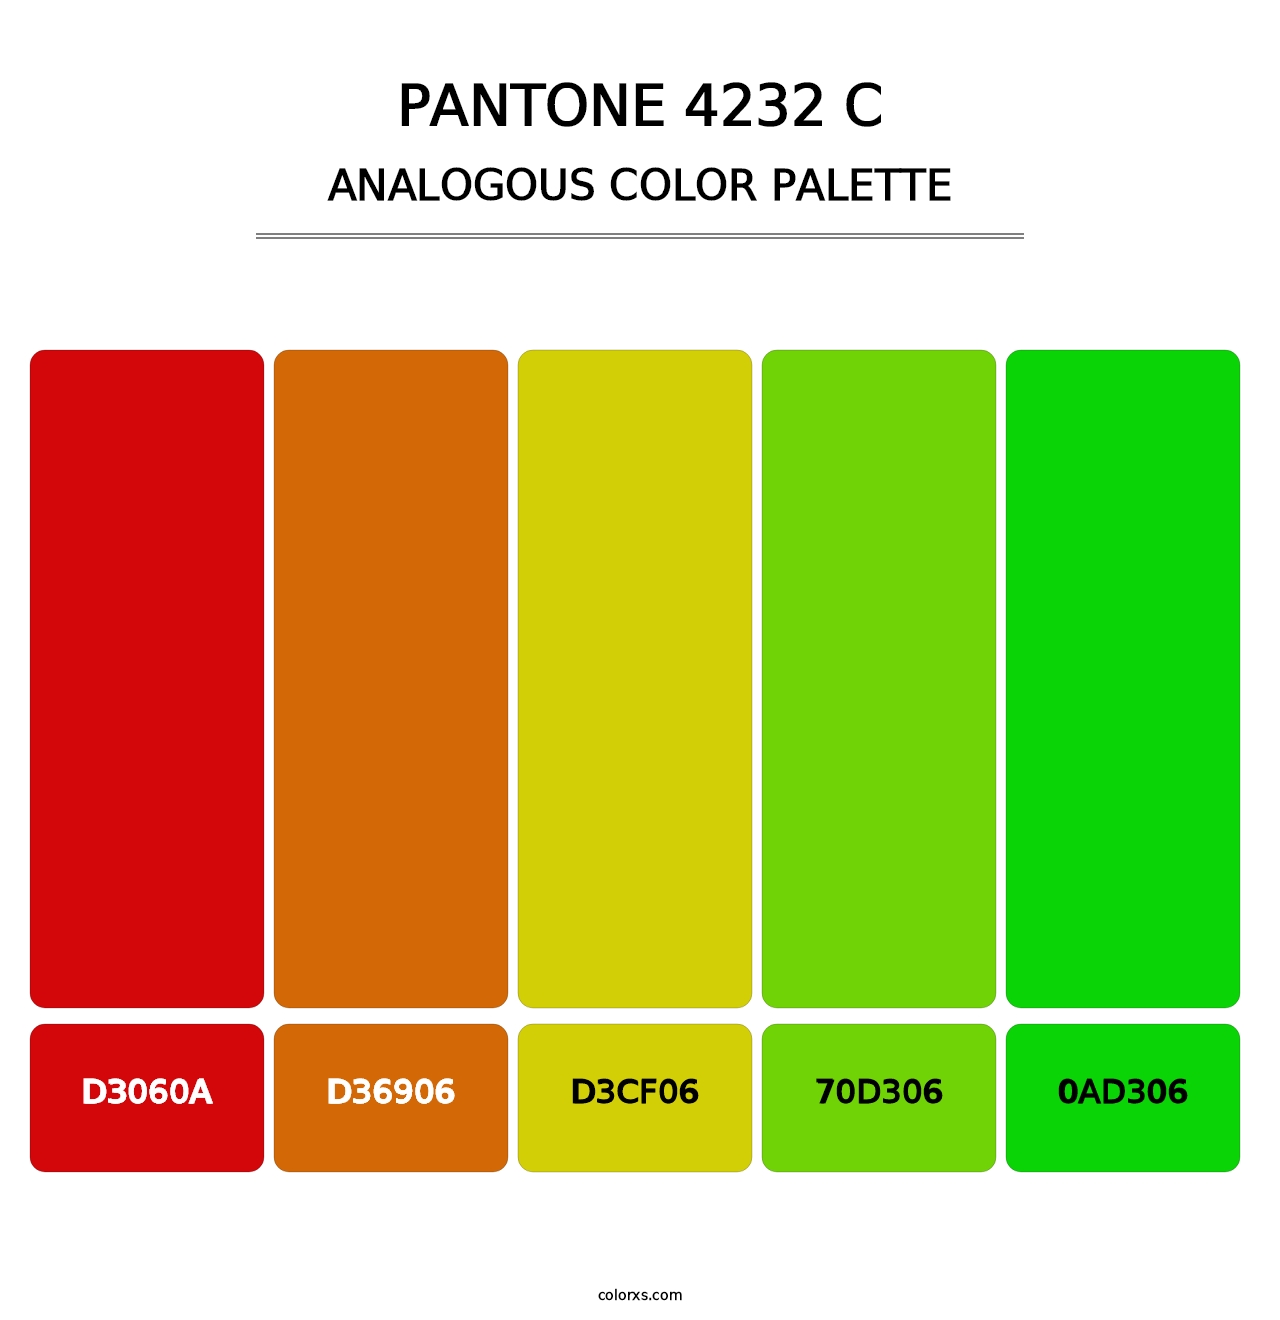 PANTONE 4232 C - Analogous Color Palette